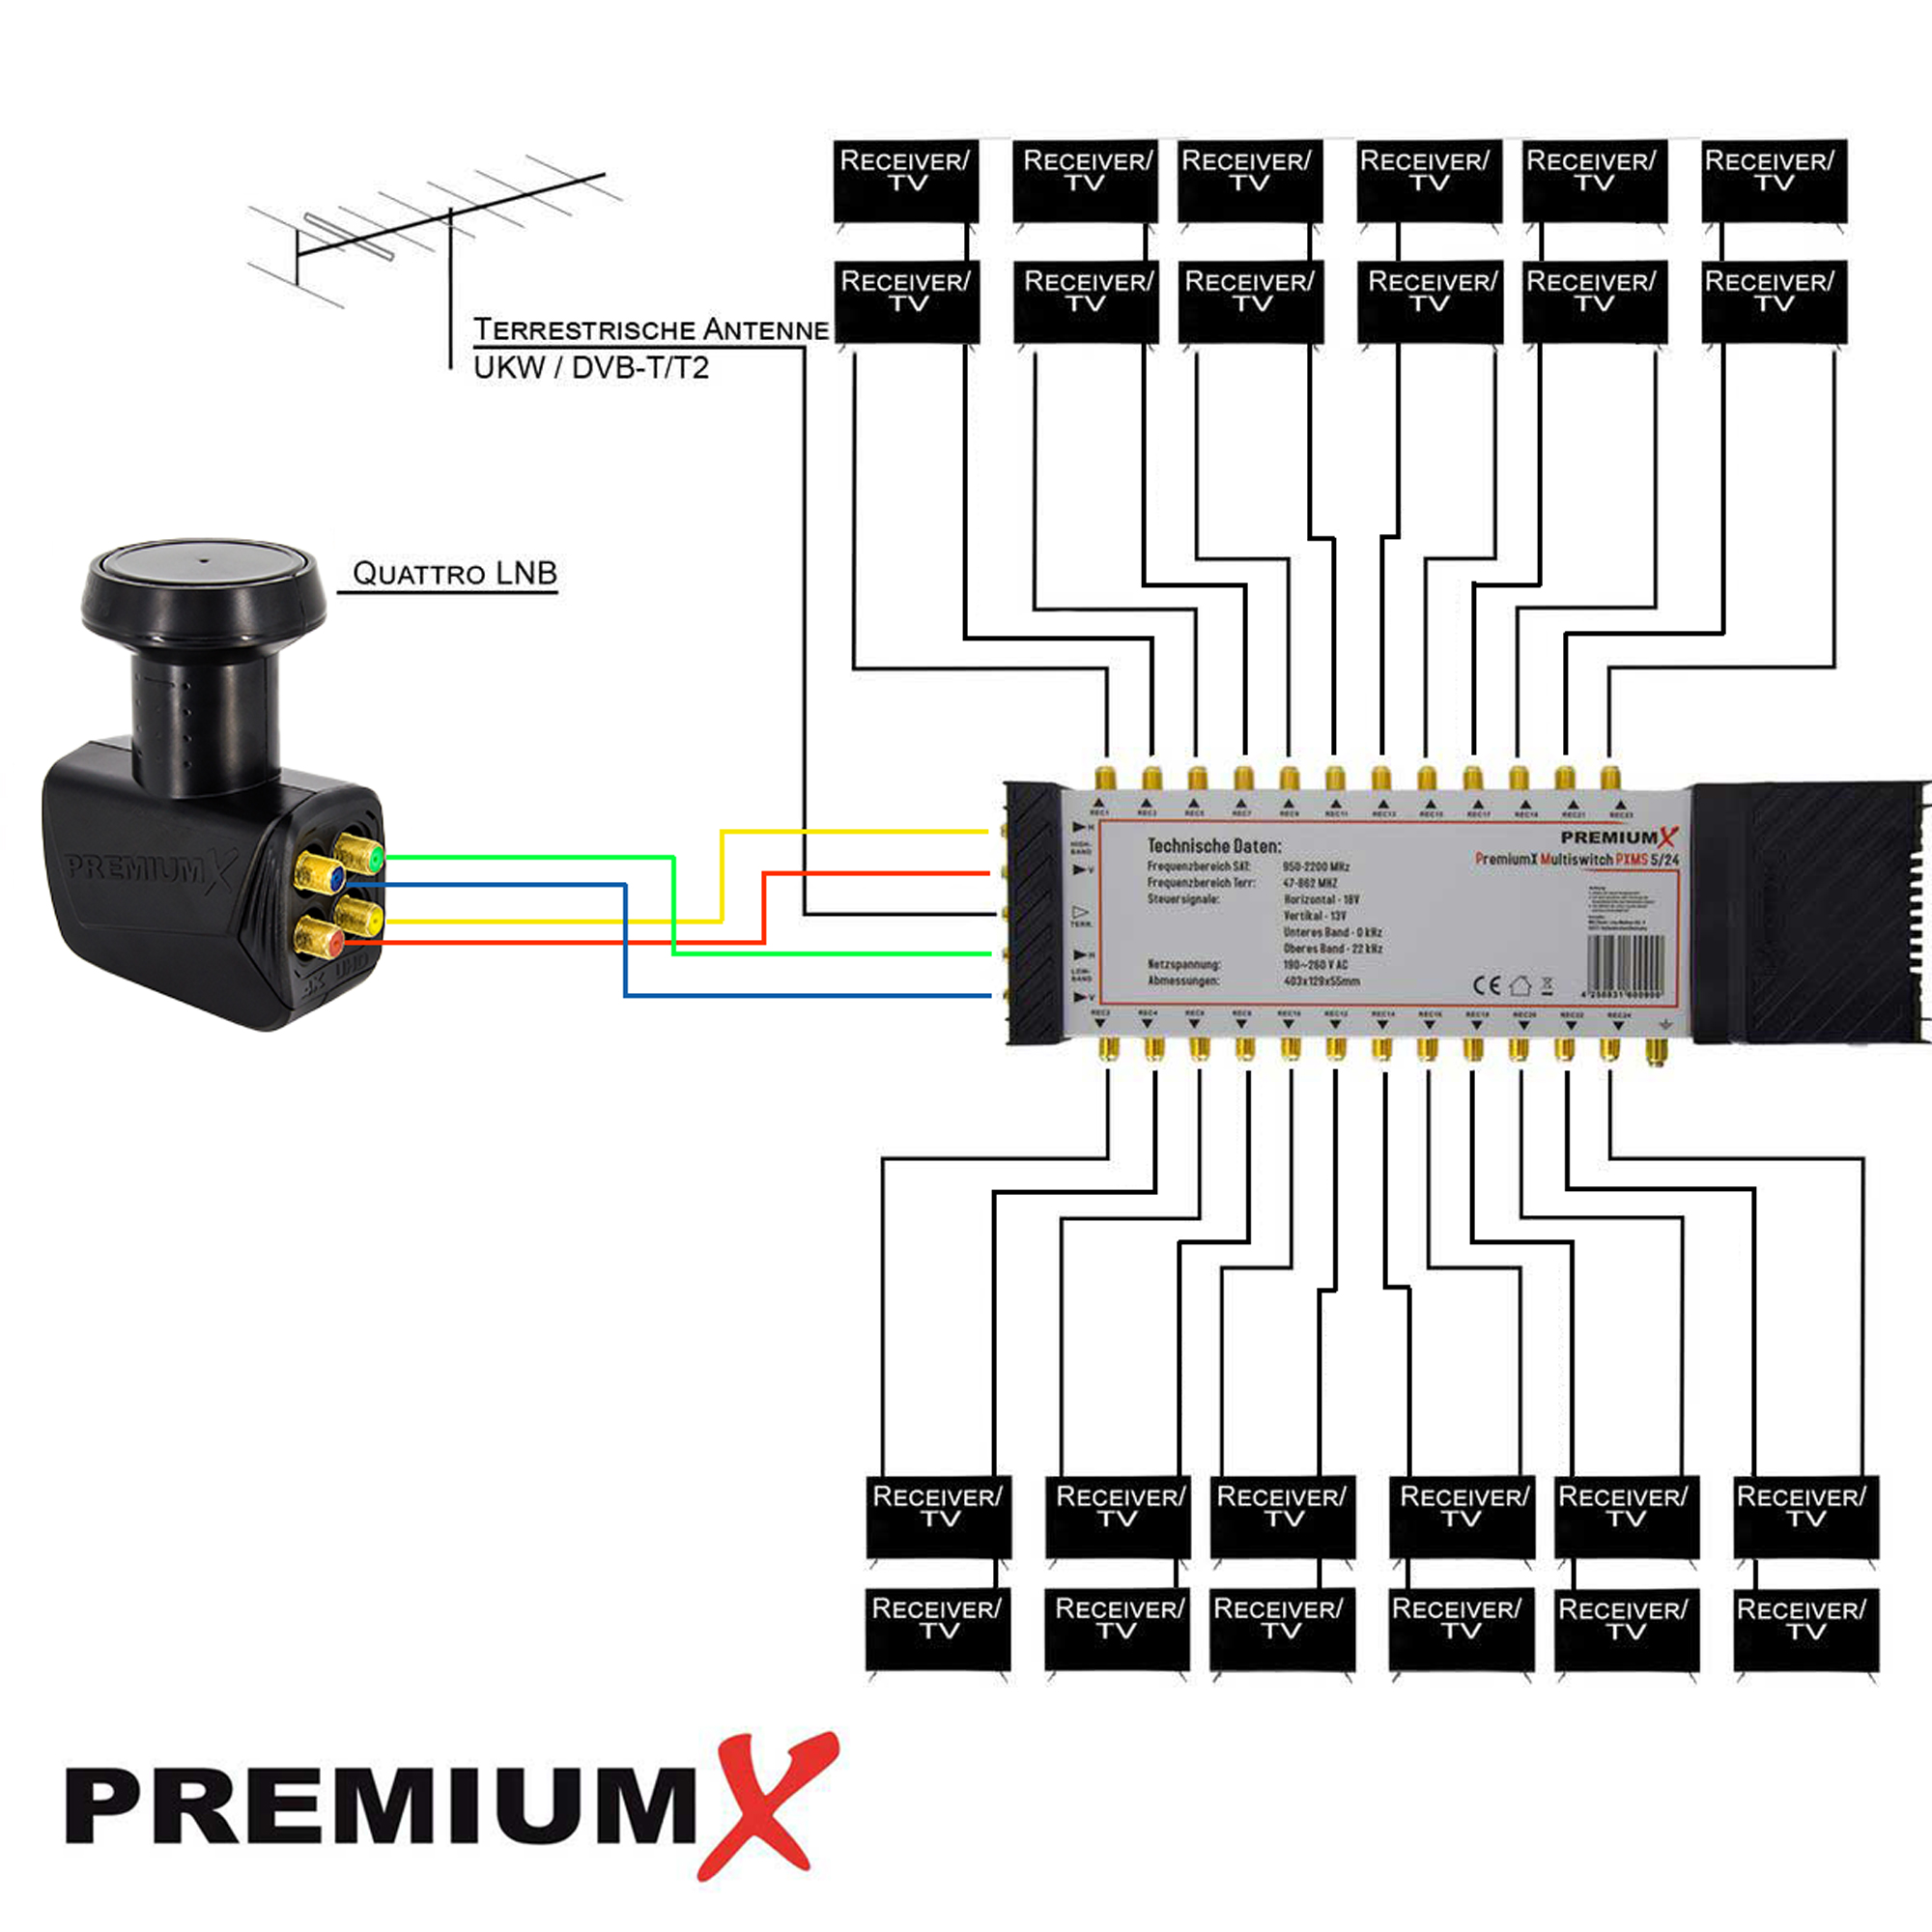 PREMIUMX Multischalter Set 5/24 Multiswitch SAT LNB Quattro Sat-Multischalter F-Stecker 56x